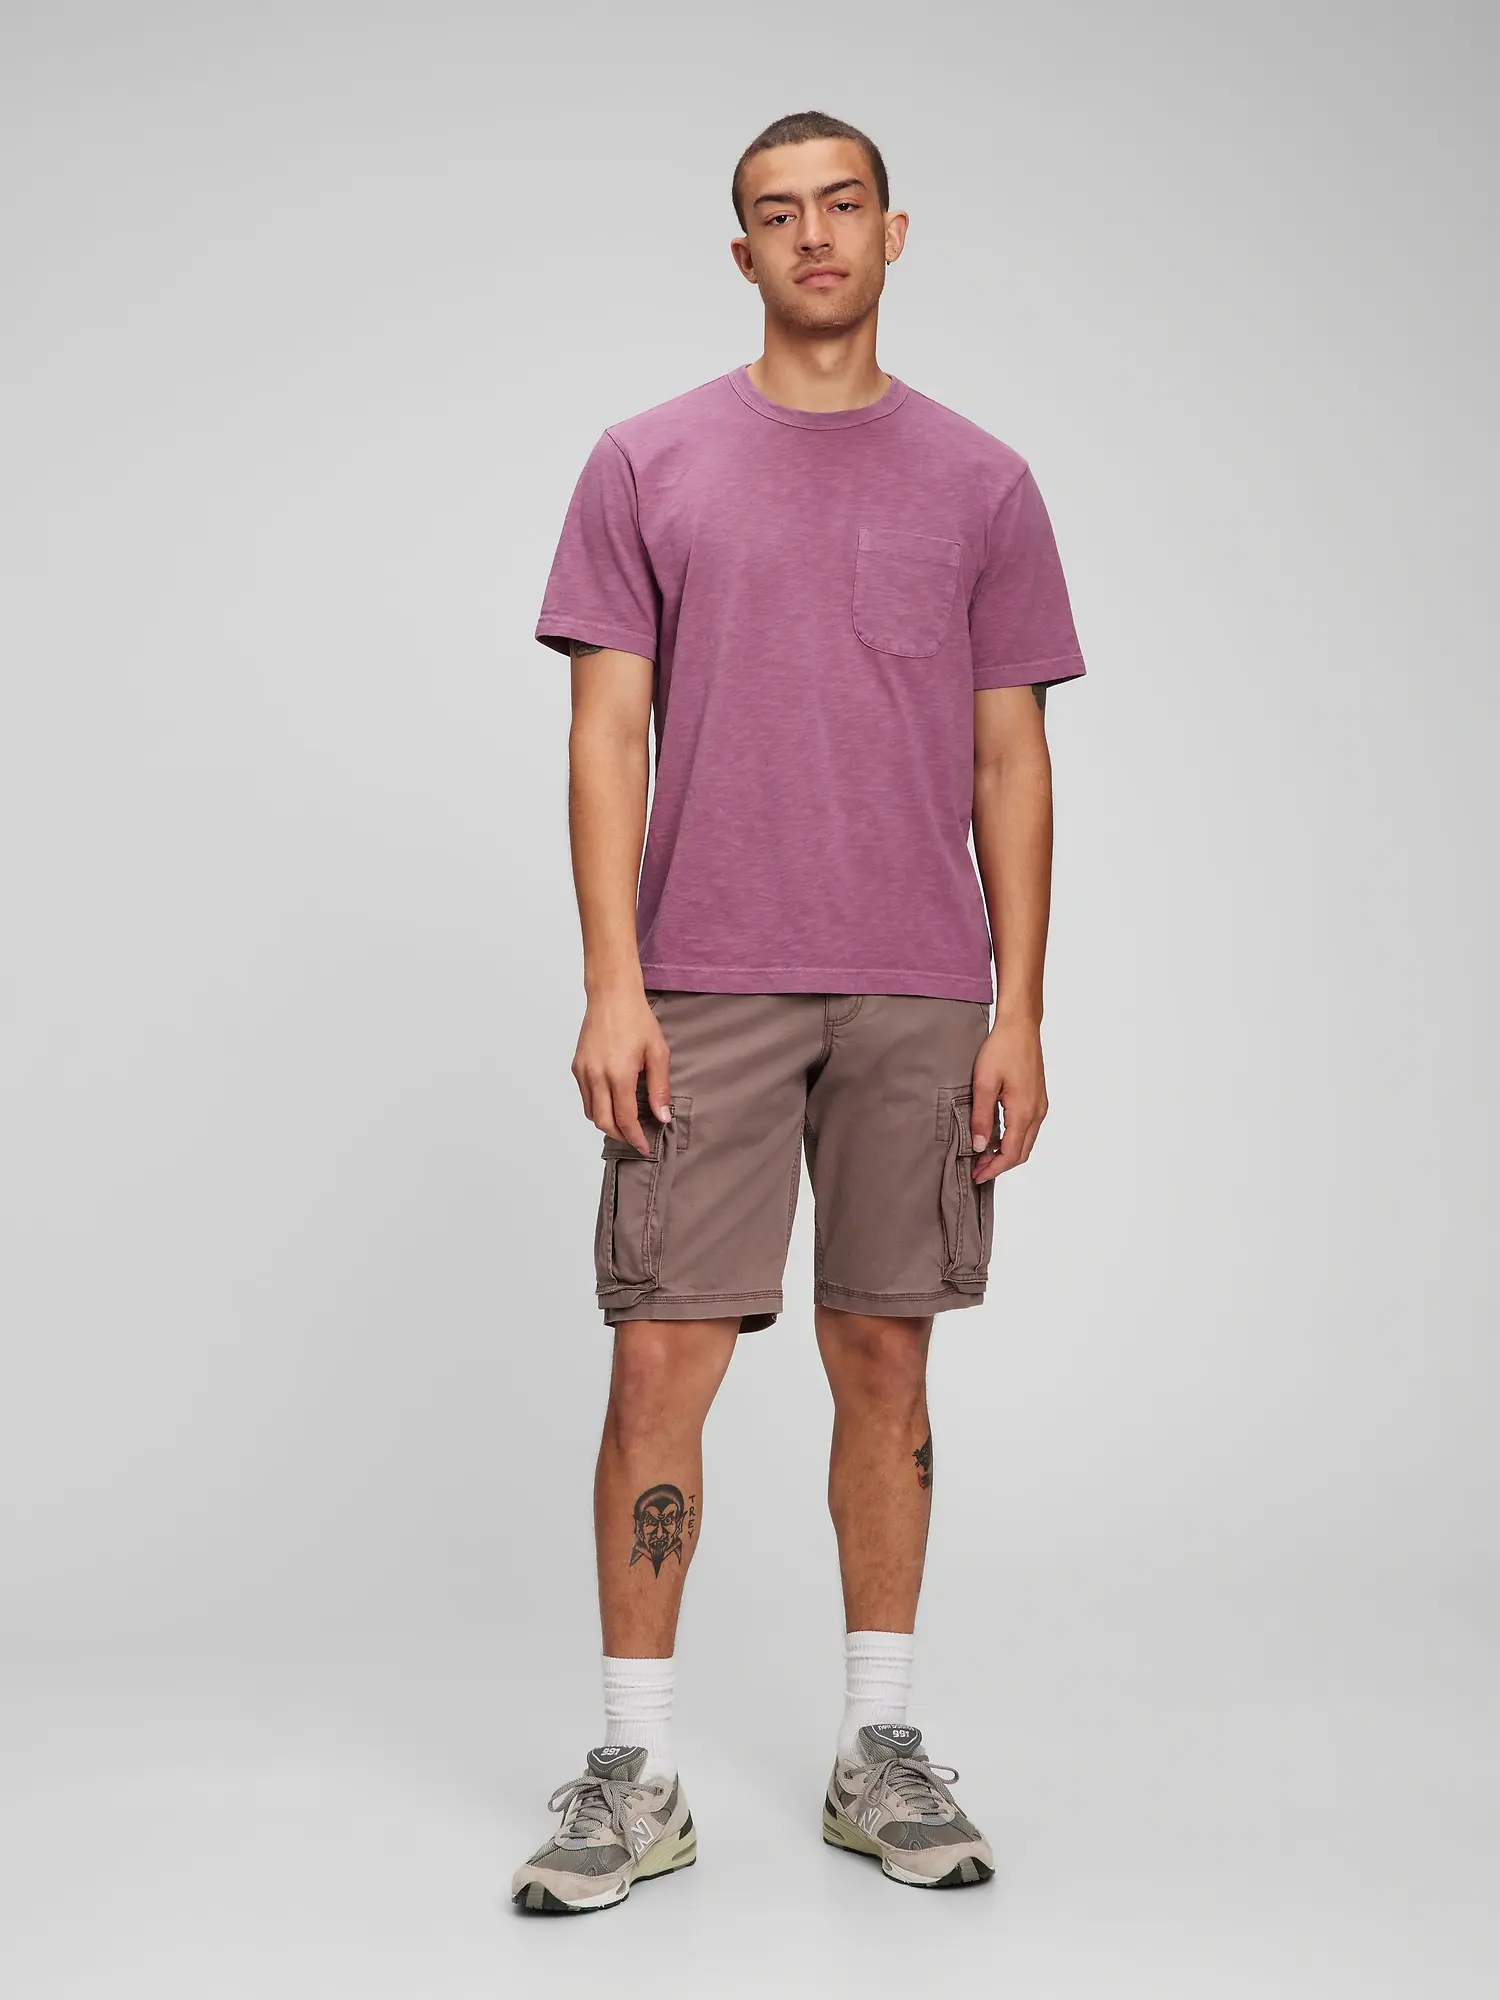 Gap Classic Fit Slub Pocket T-Shirt purple. 1